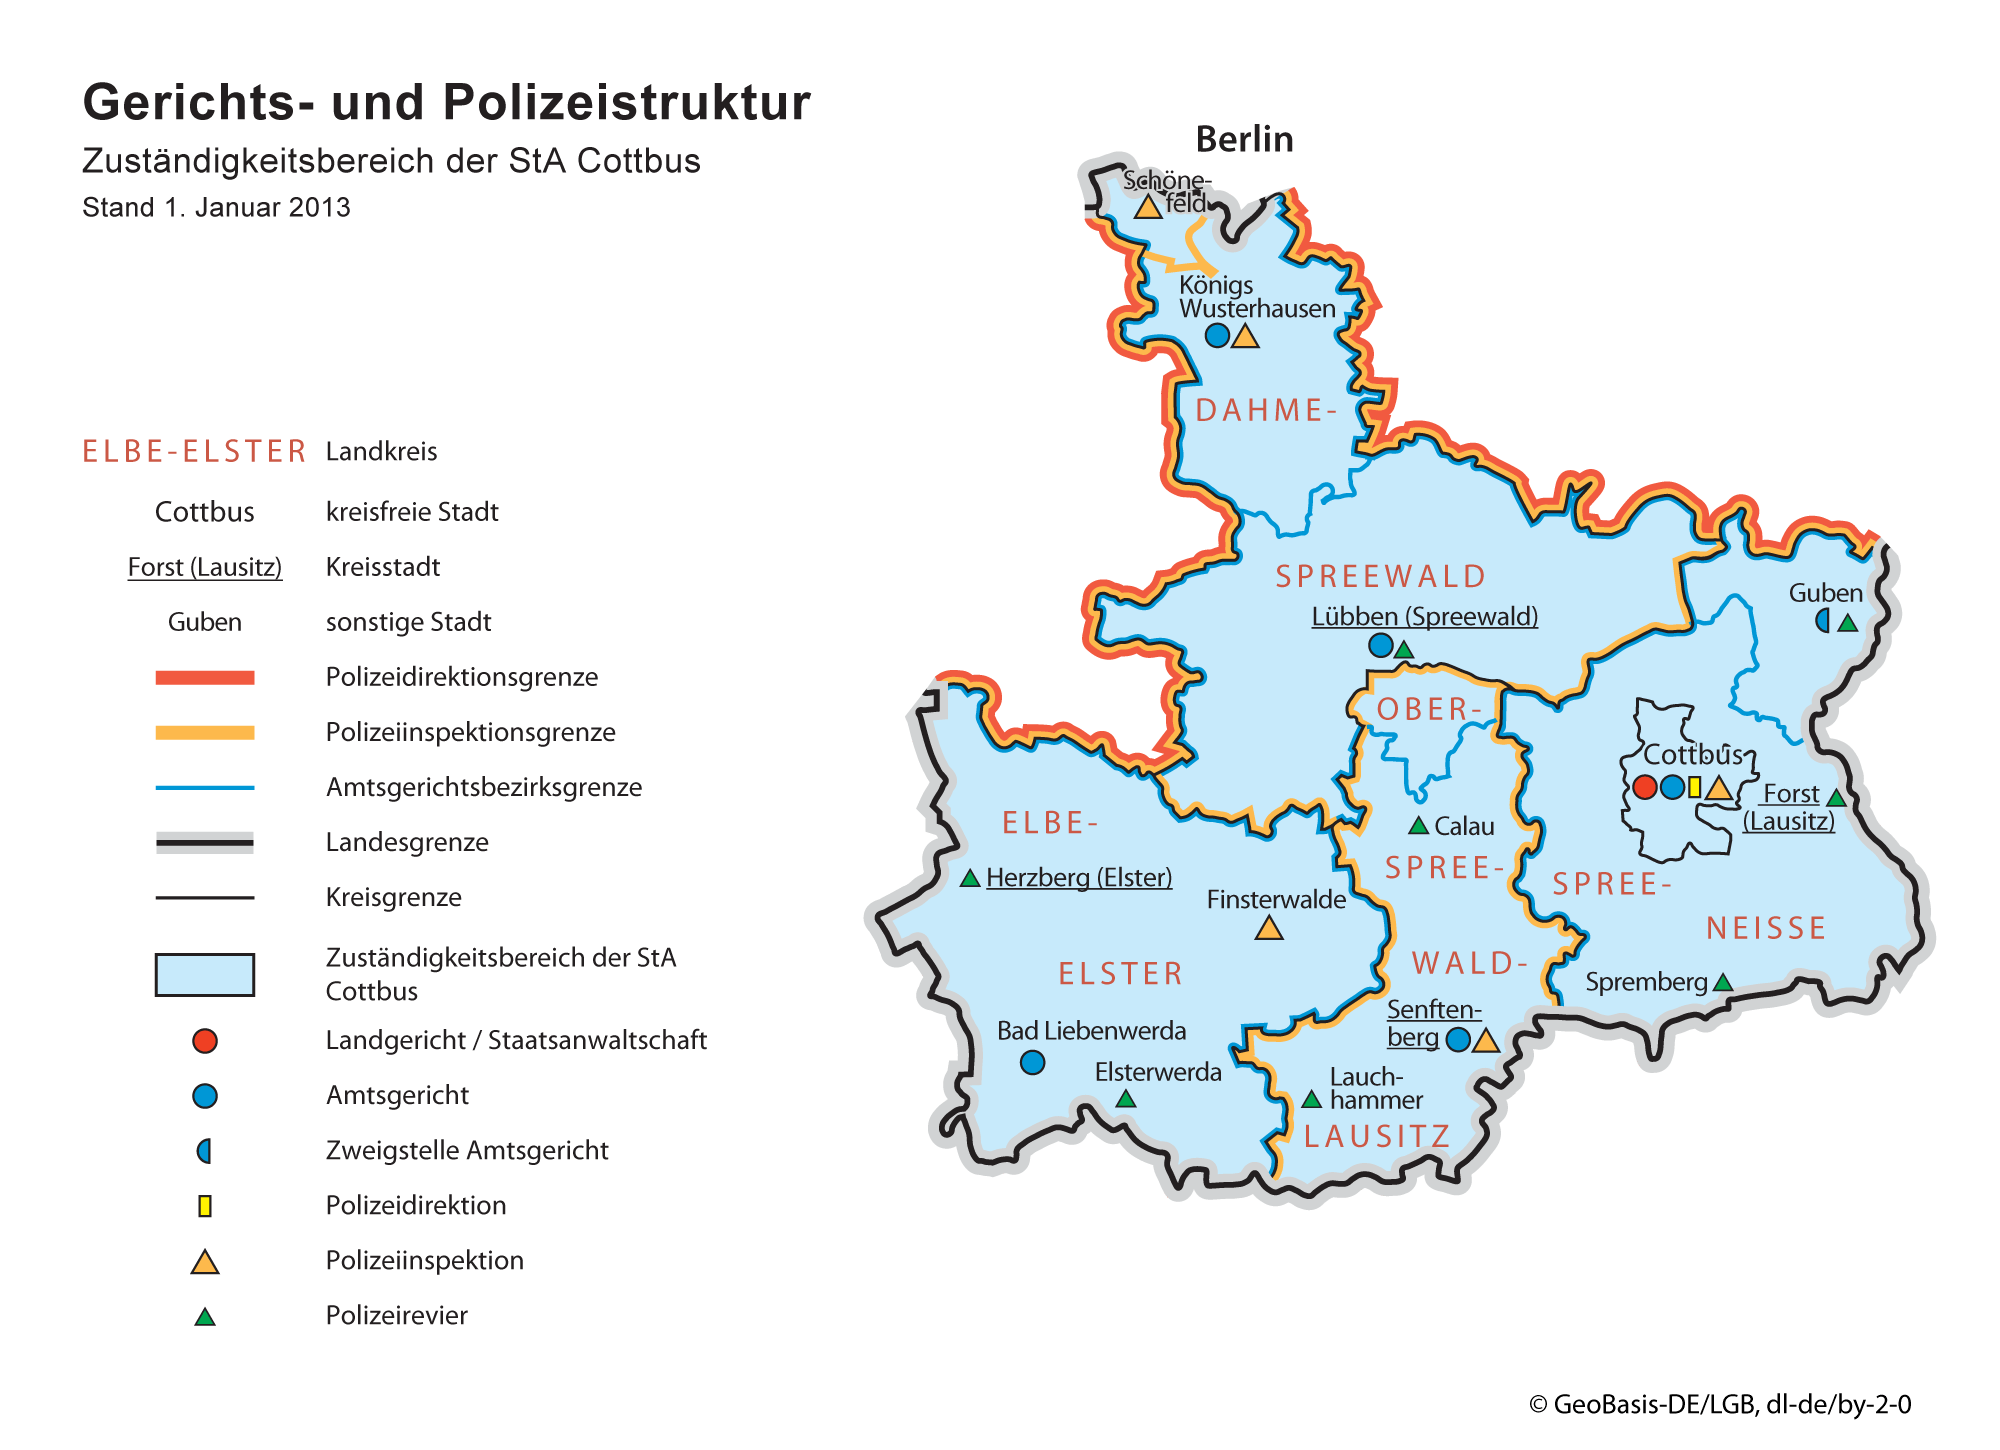 Karte zu der Gerichts- und Polizeistruktur für den Zuständigkeitsbereich der Staatsanwaltschaft Cottbus